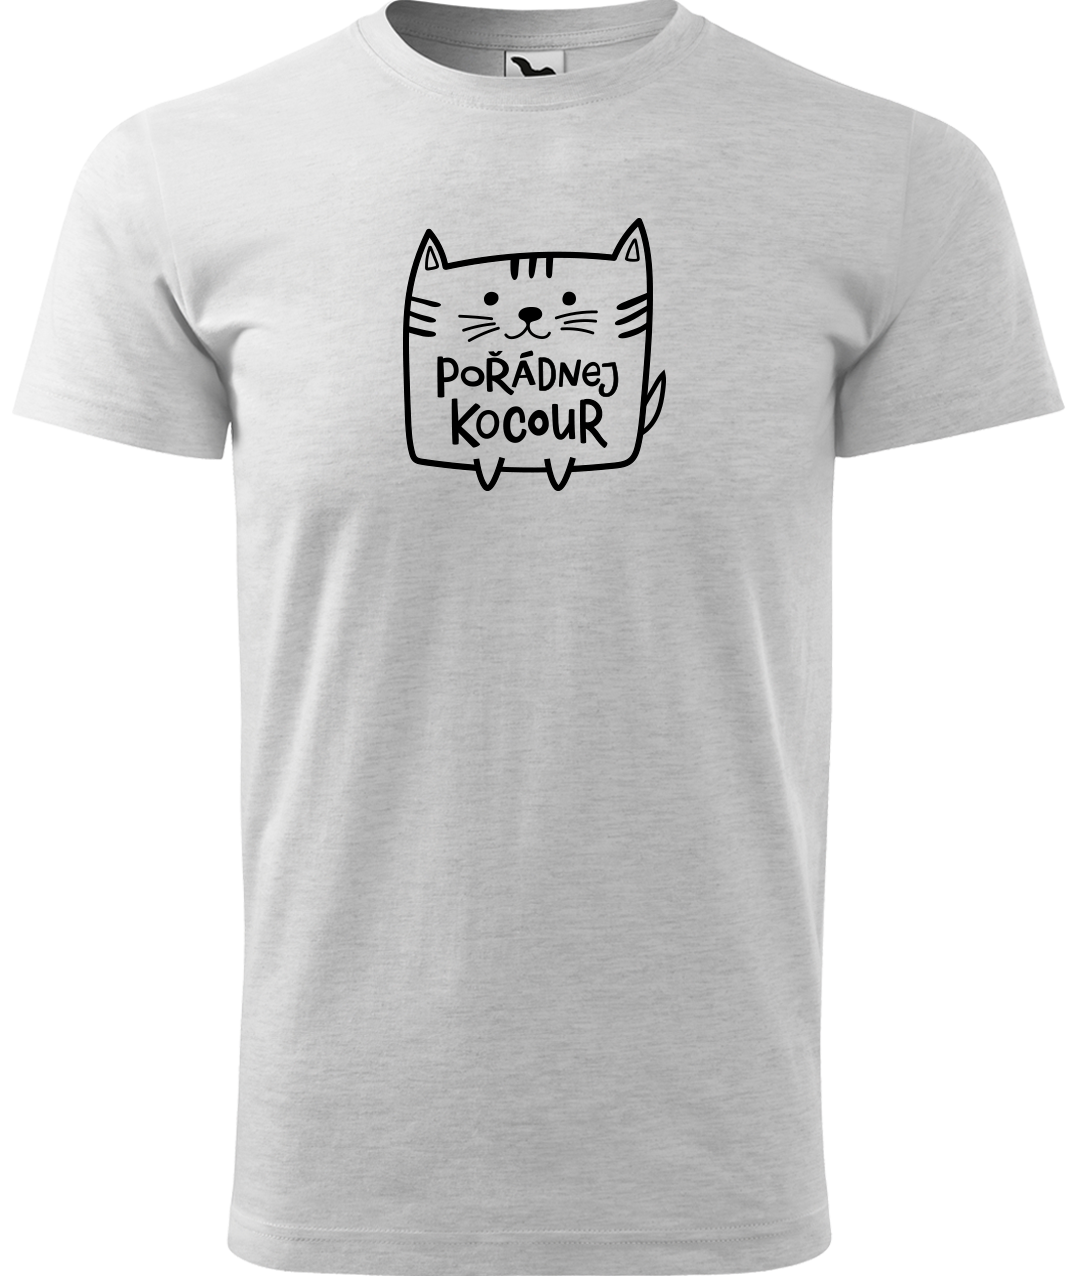 Pánské tričko s kočkou - Pořádnej kocour Velikost: L, Barva: Světle šedý melír (03)